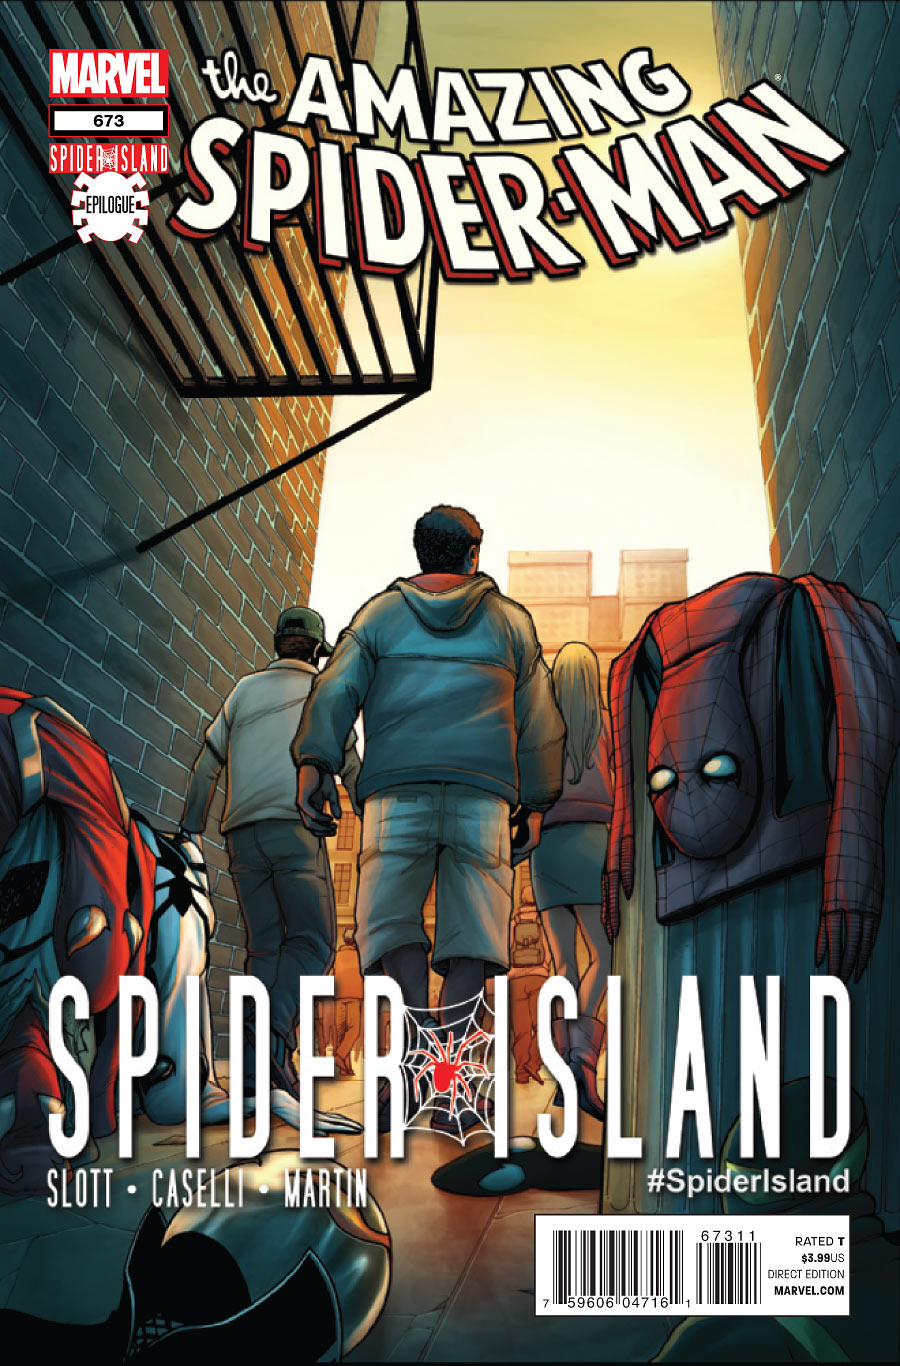 Amazing Spider-Man Vol. 1 #673